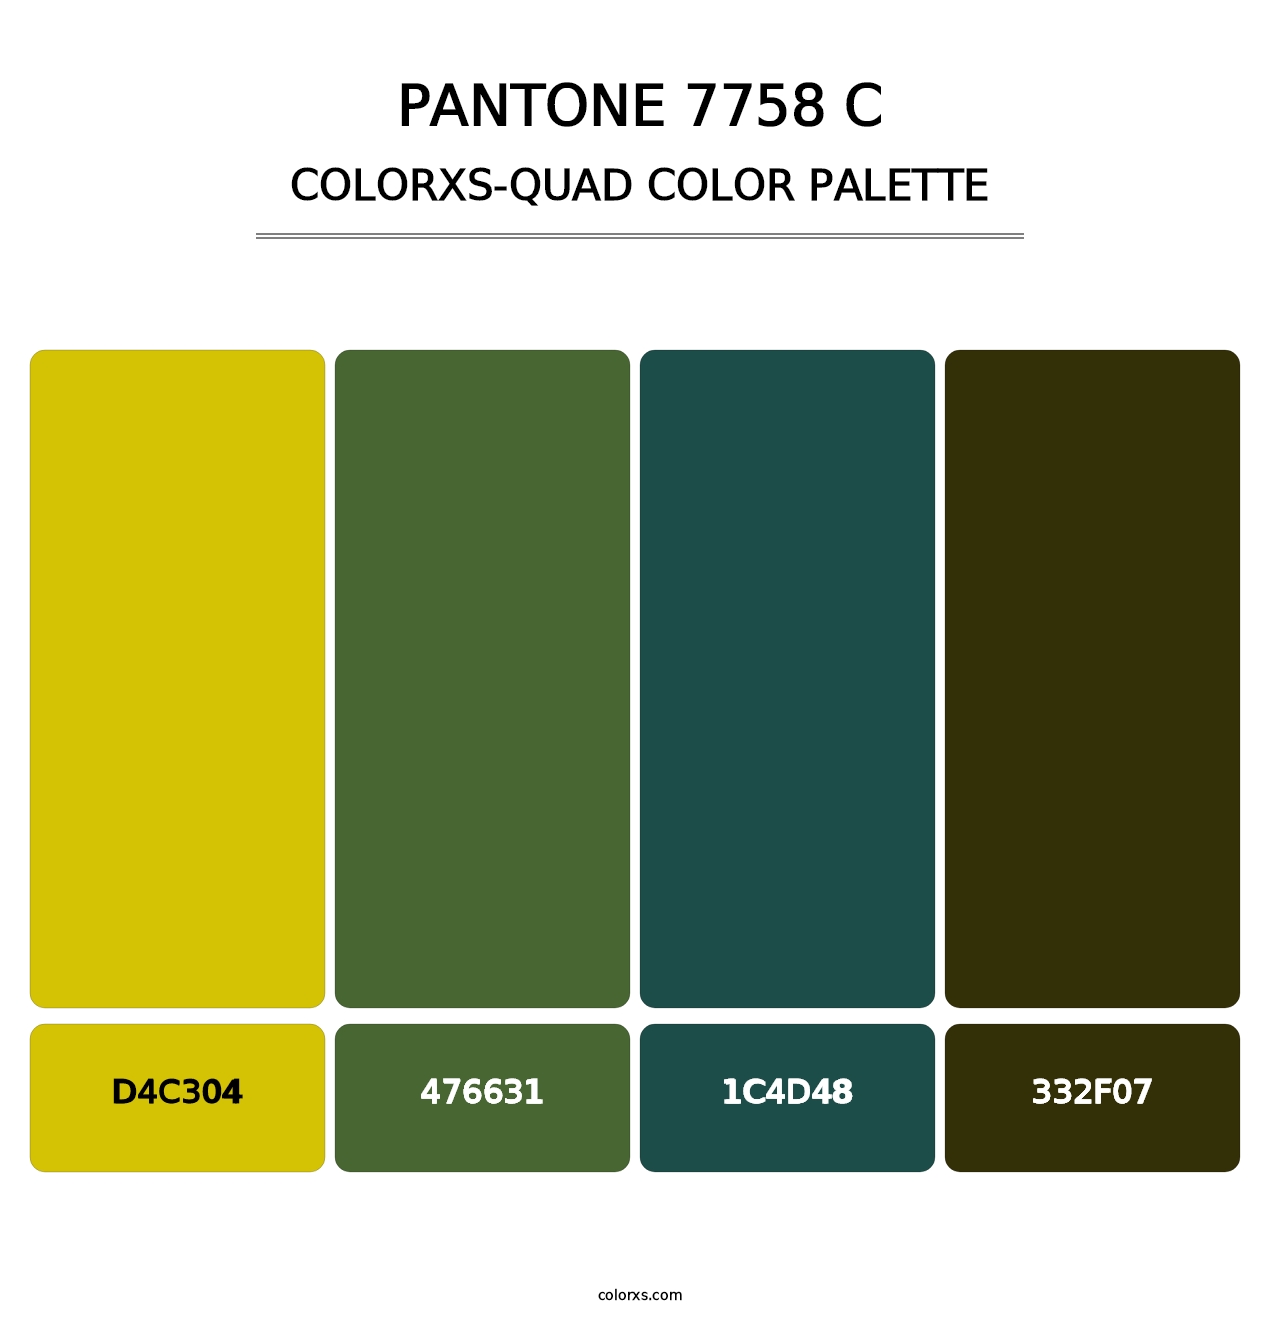 PANTONE 7758 C - Colorxs Quad Palette